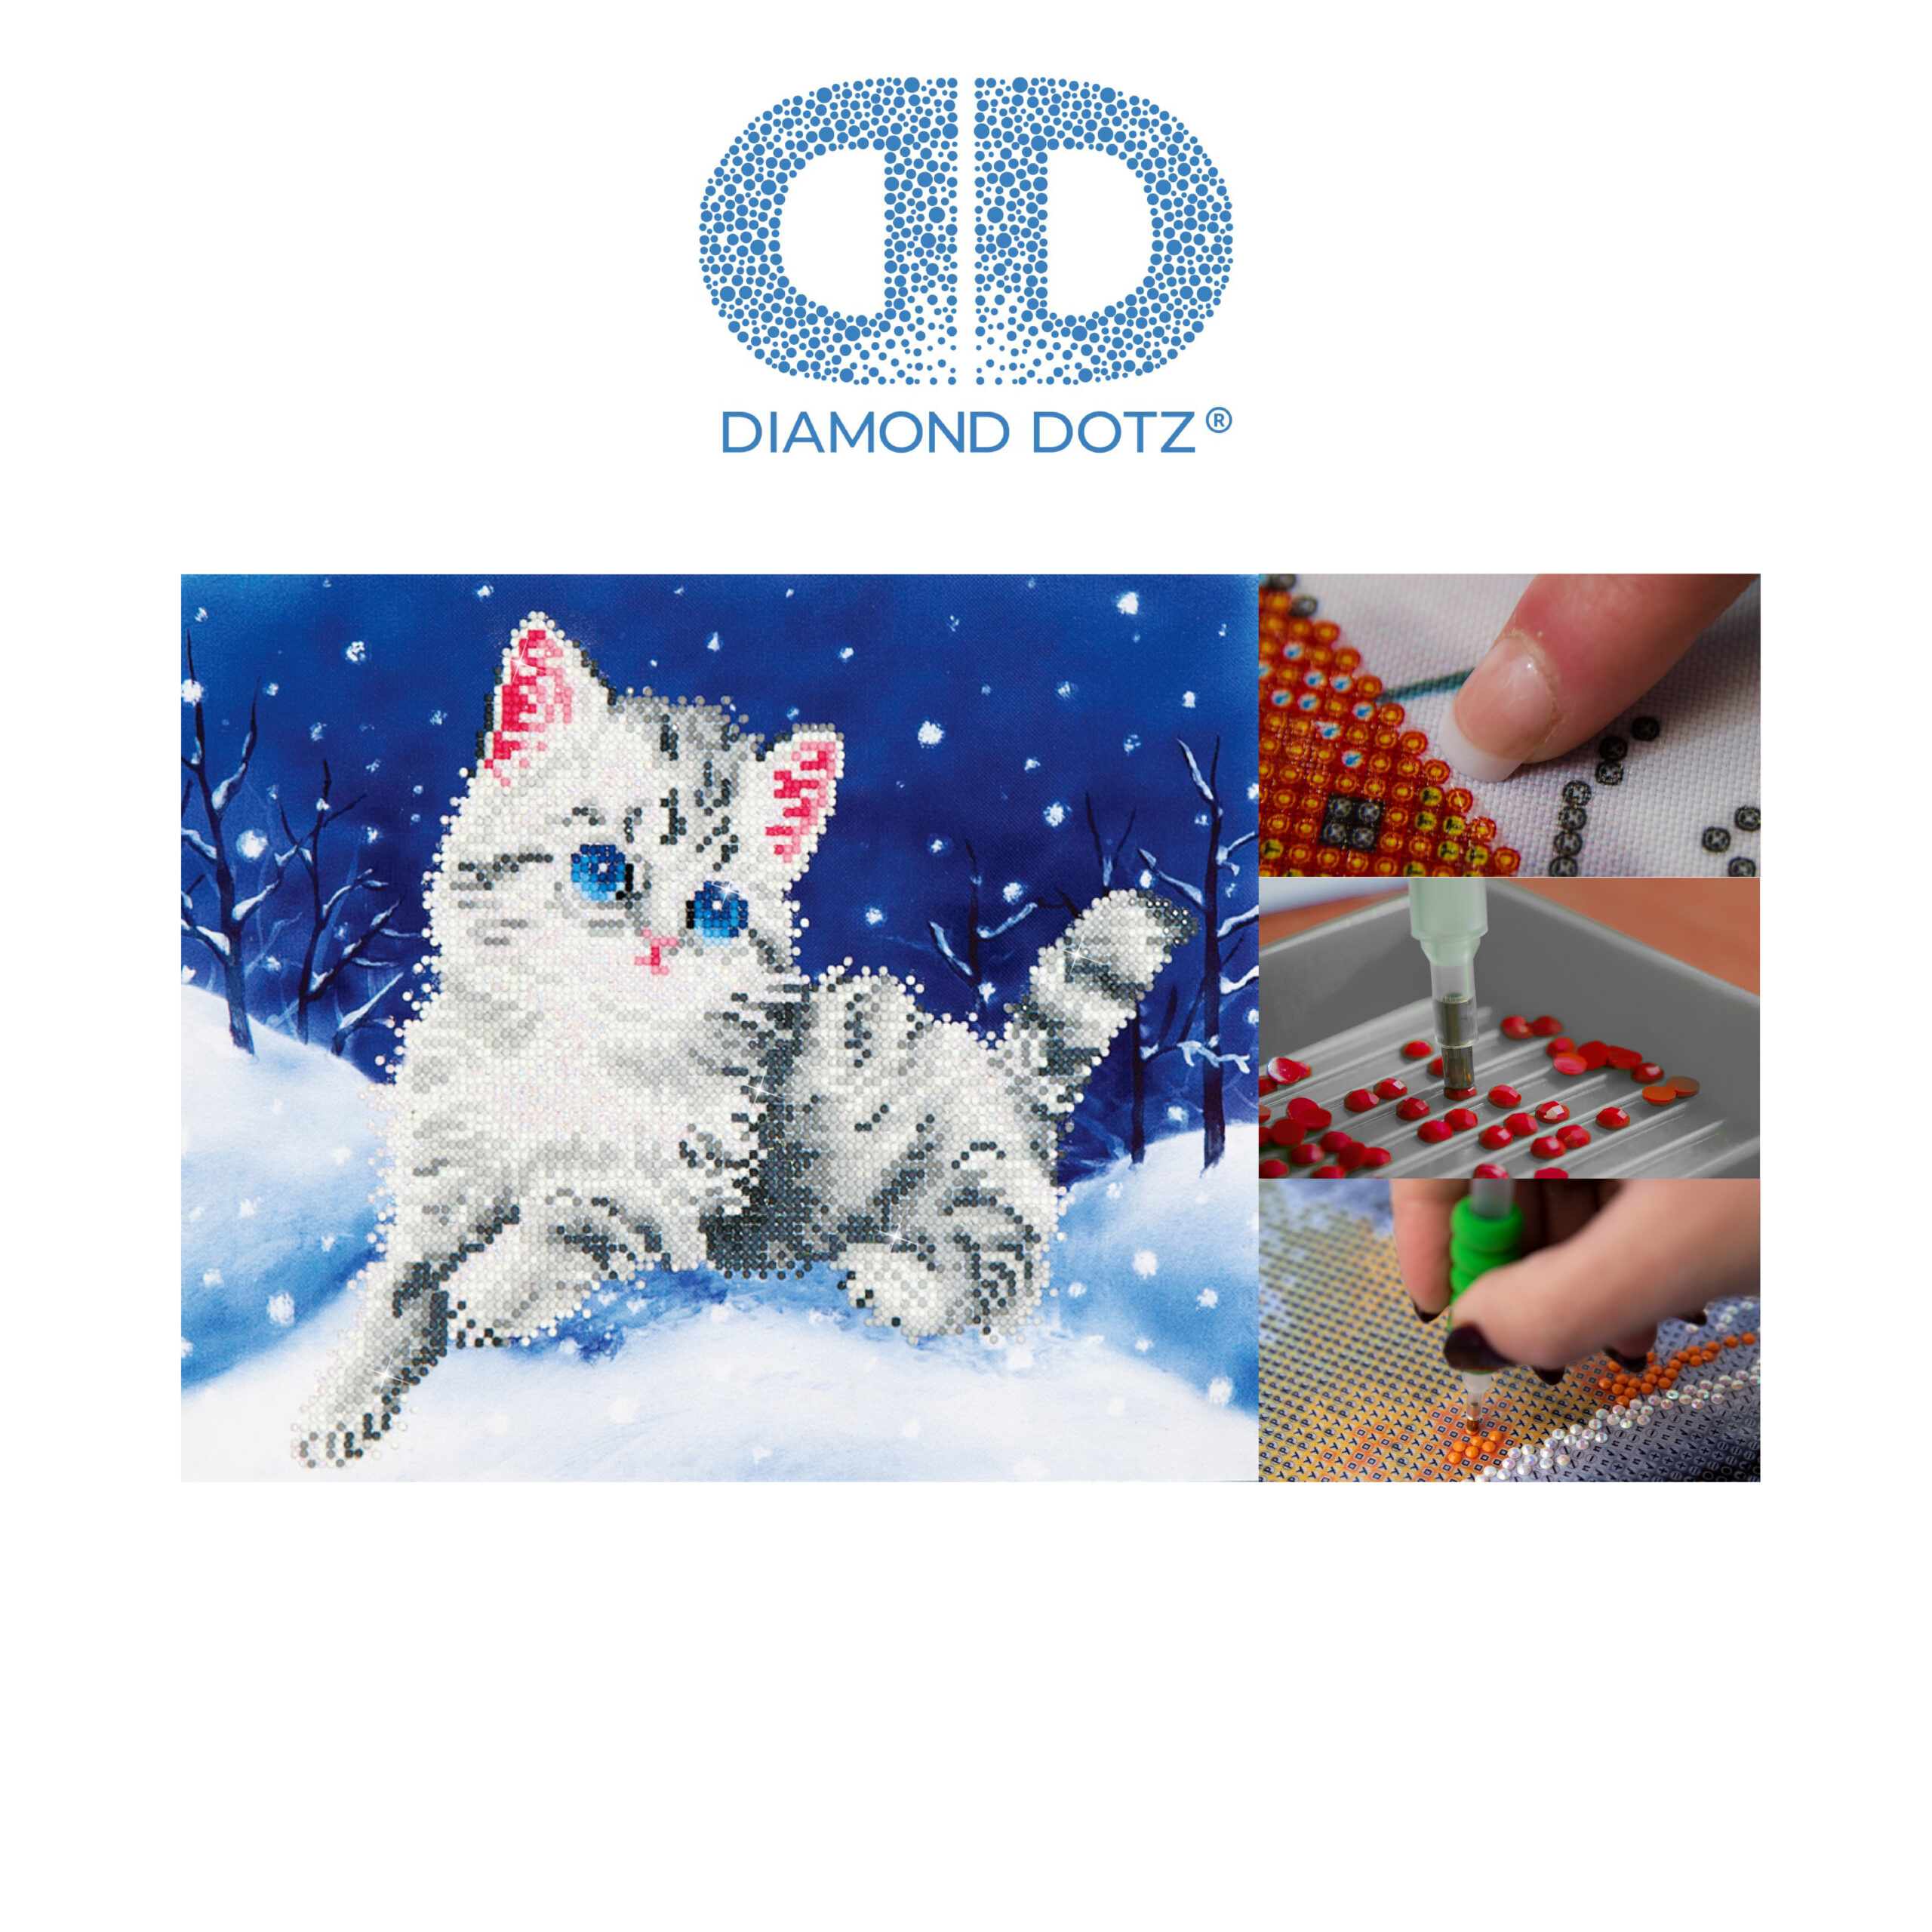 Diamond Dotz Katze im Schnee 35,5 x 27,9 cm 